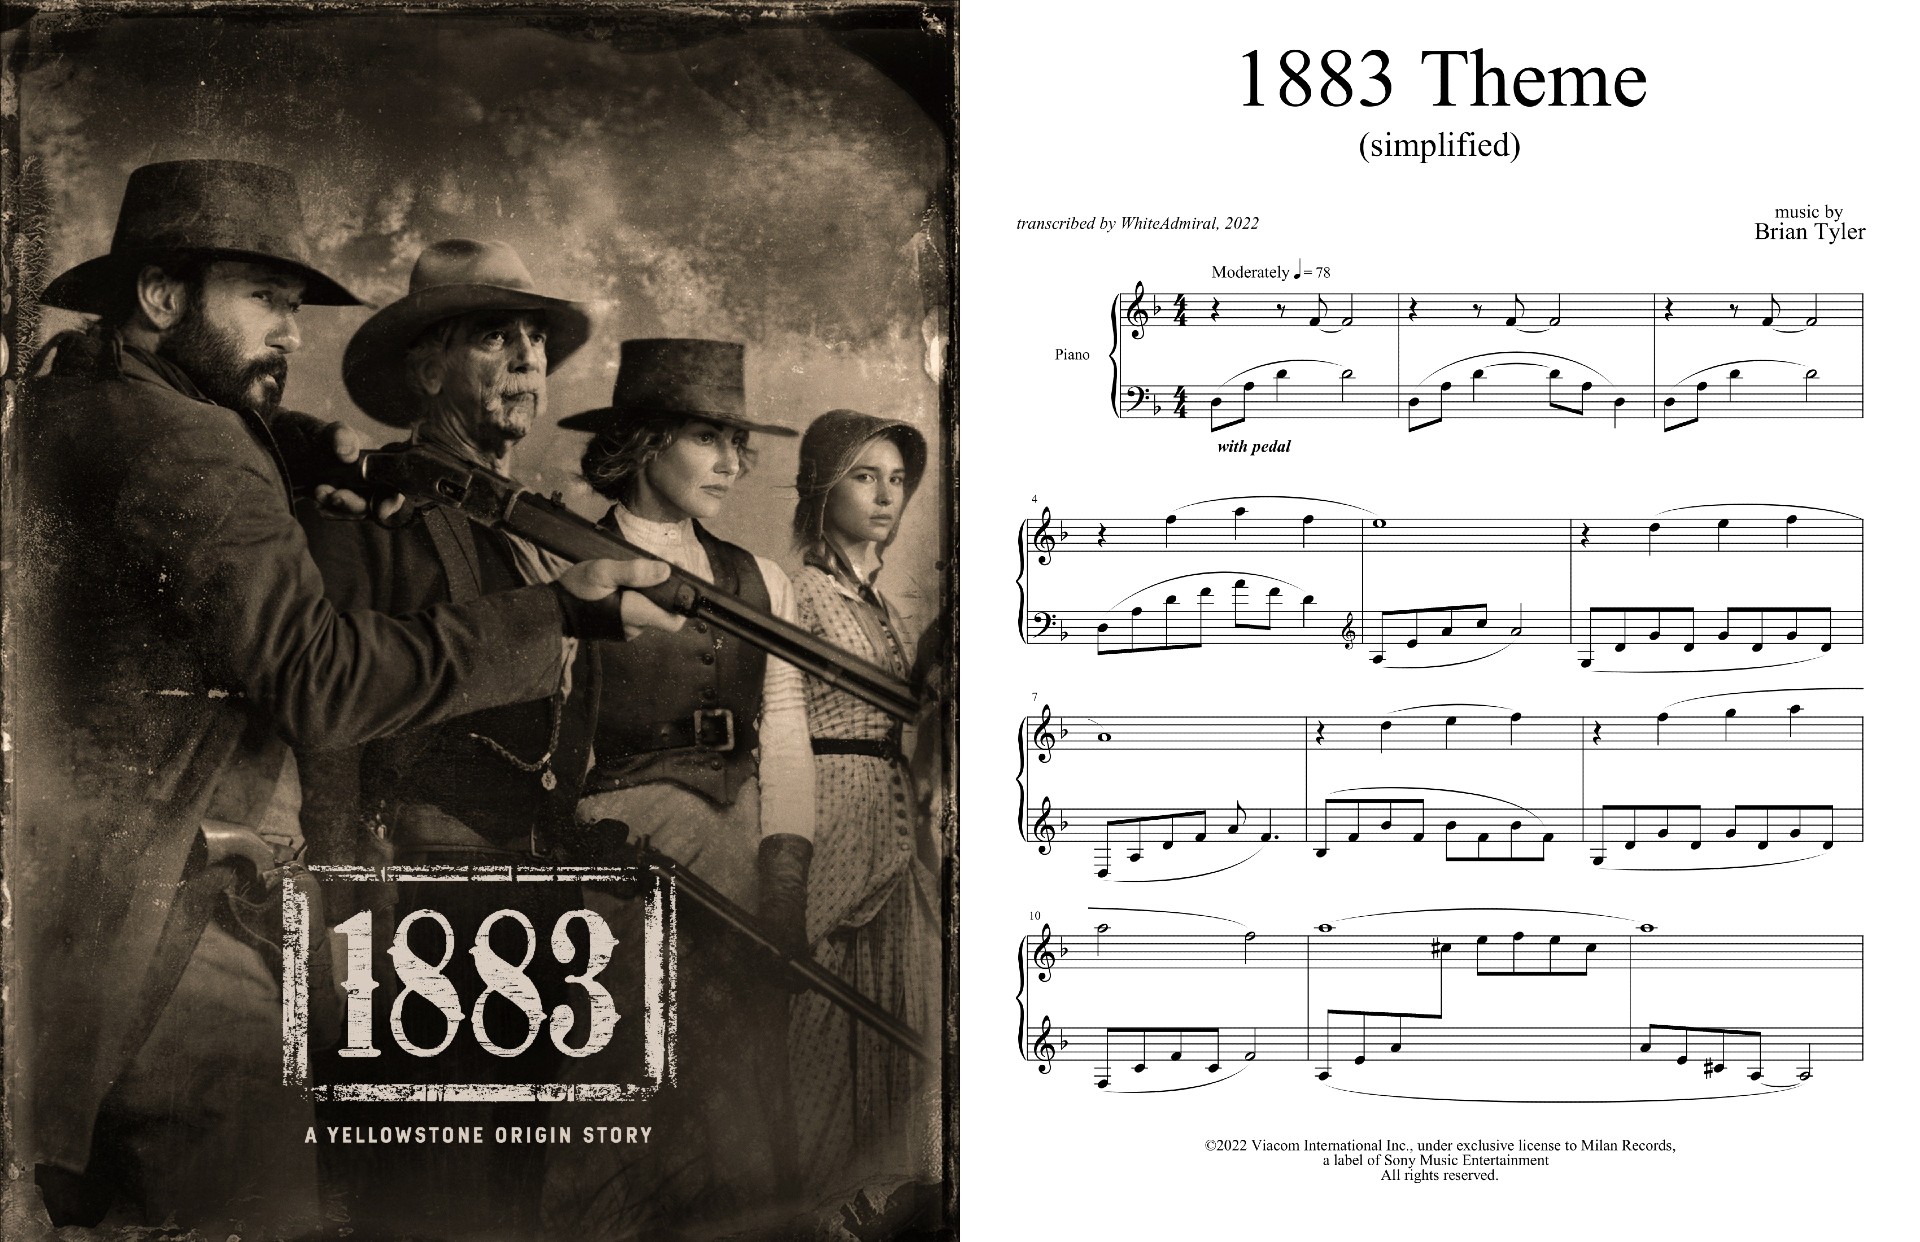 1883 Theme (simplified).jpg